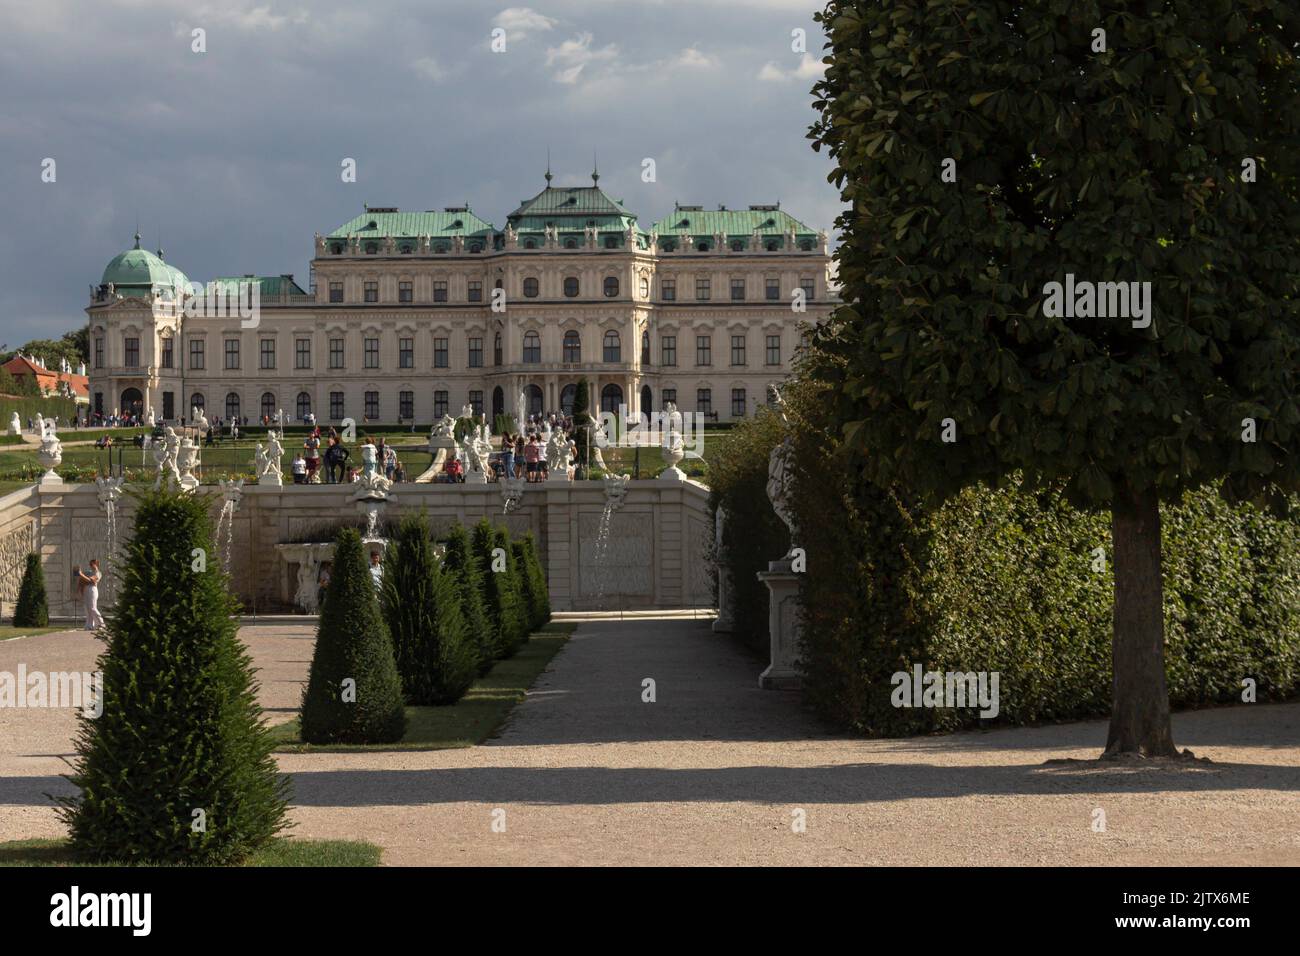 WIEN, ÖSTERREICH - 14. August 2019: Schloss Belvedere in Wien, Österreich. Der Palast wurde im 18.. Jahrhundert als Sommerresidenz von Prince erbaut Stockfoto